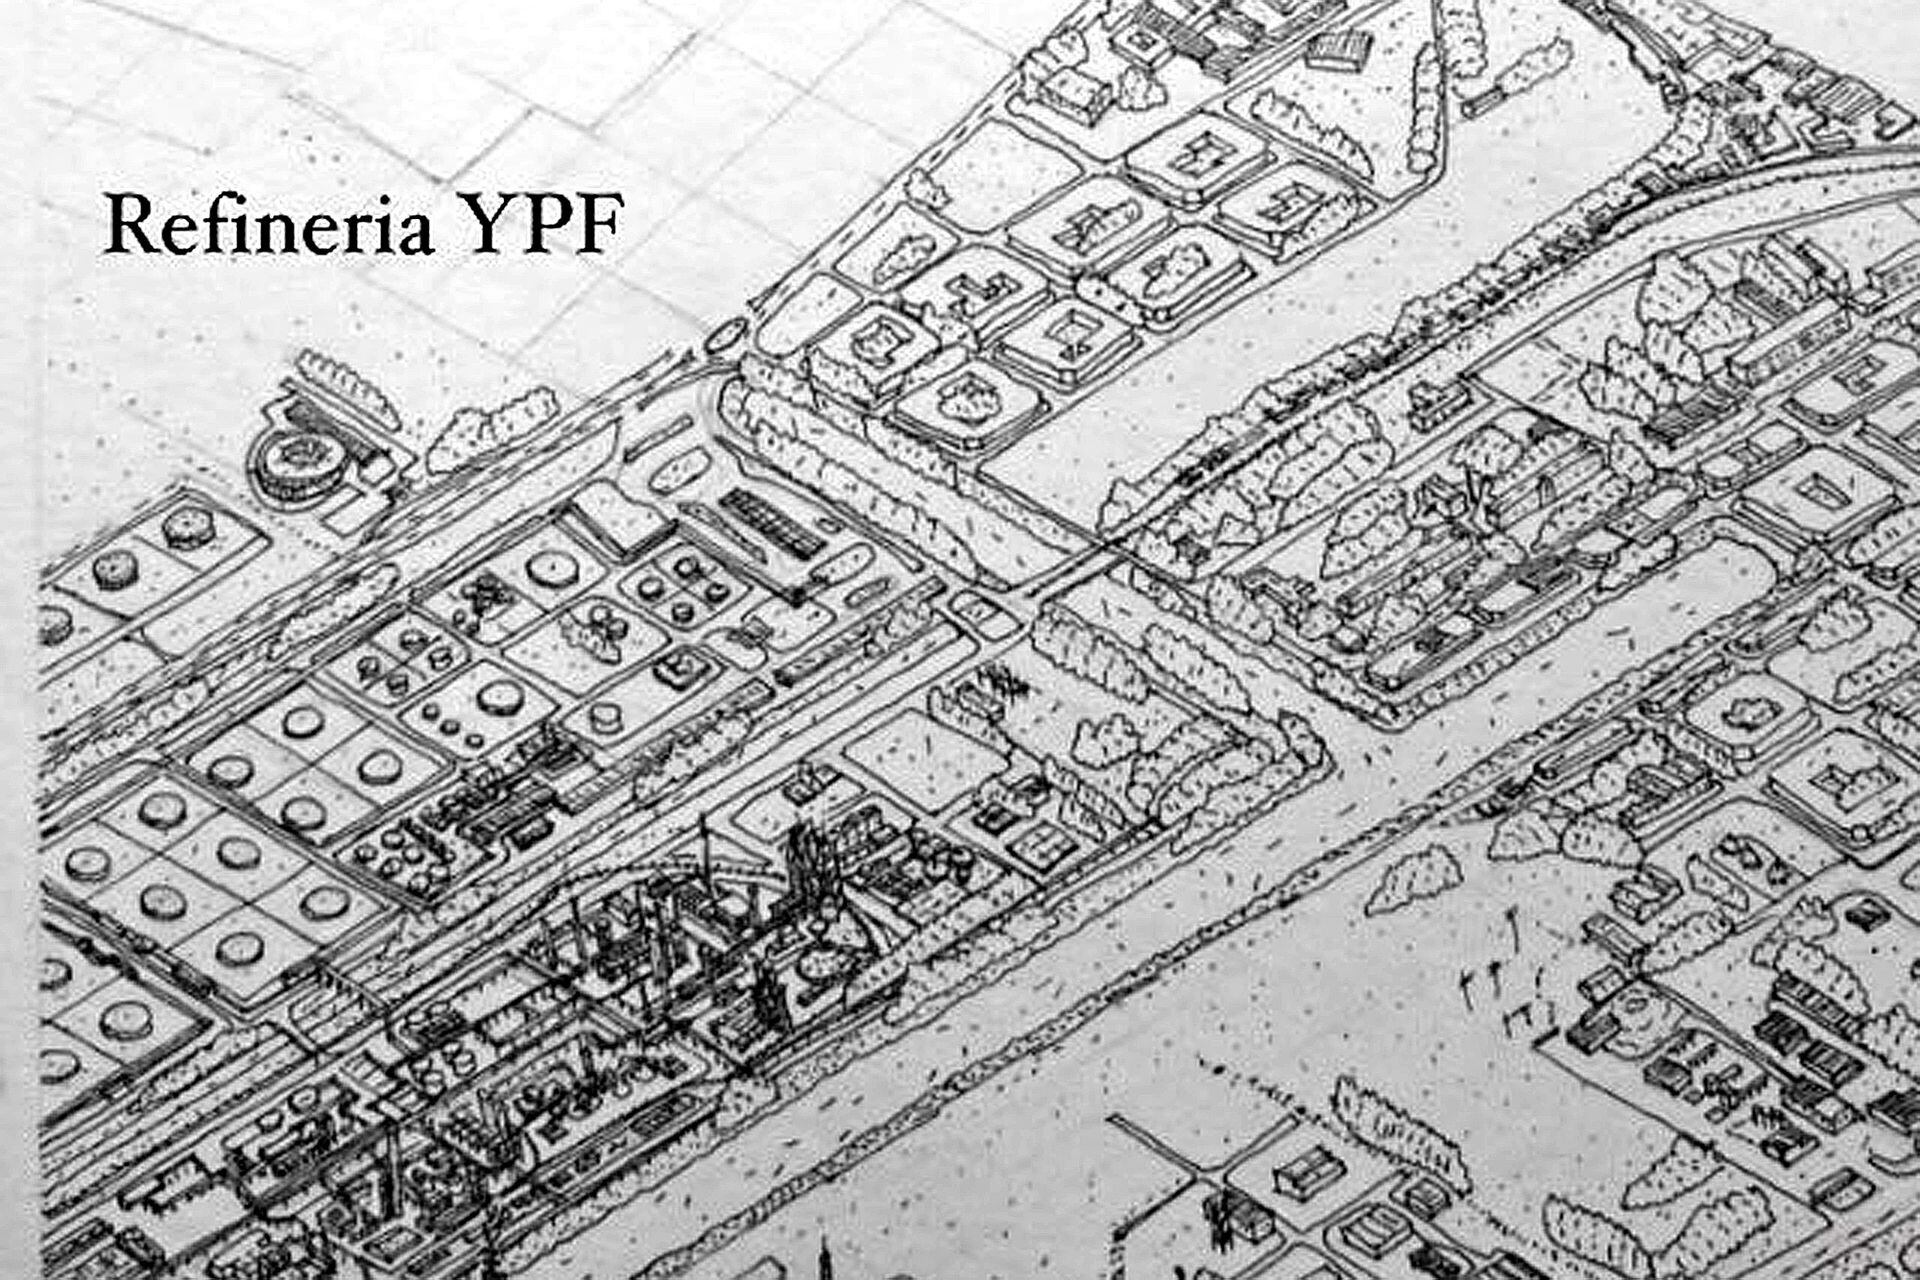 Las distintas partes del mapa de la ciudad de La Plata dibujadas por Abraham Gómez